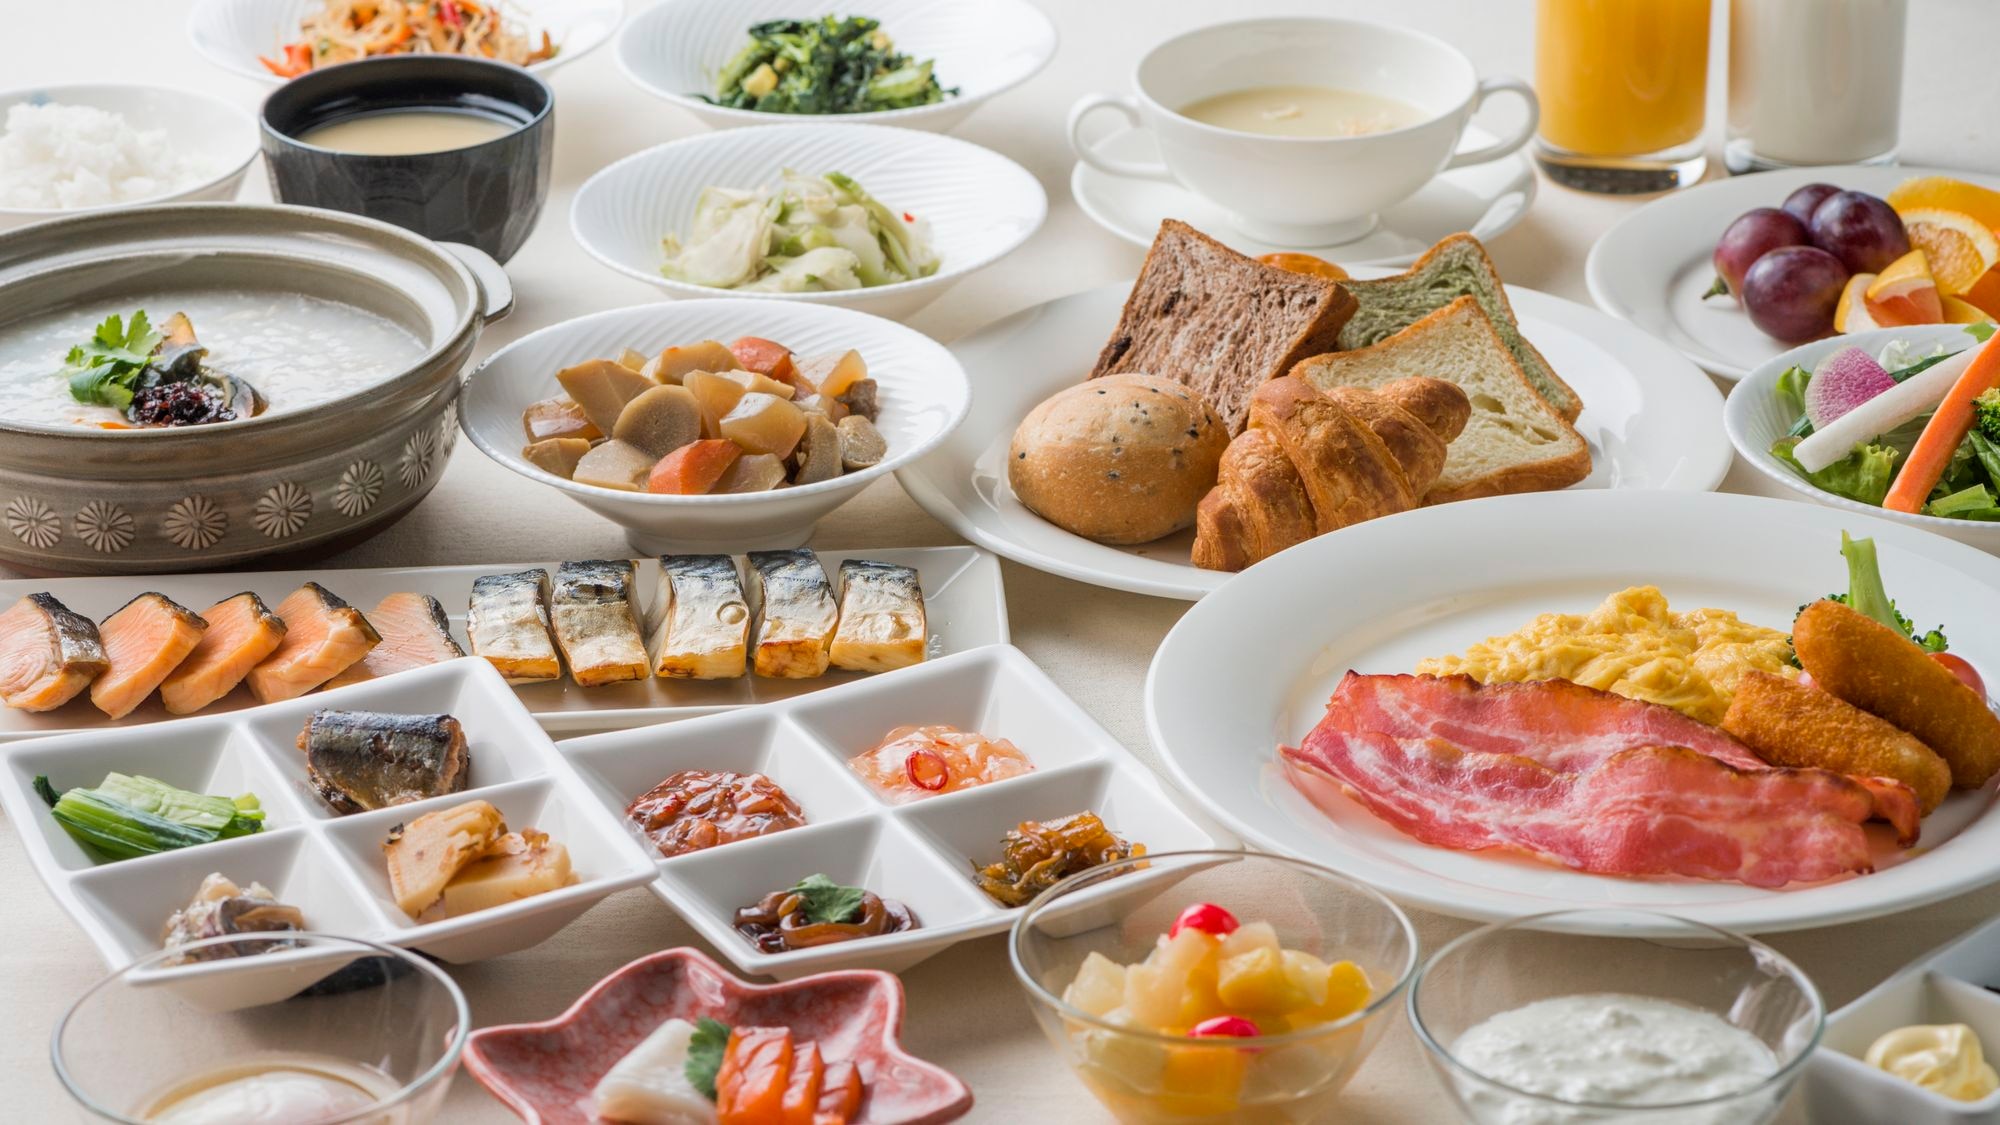 ■조식■일본식, 서양 뷔페(7:00~10:00※9:30 라스트 오더) 아침 식사 이미지